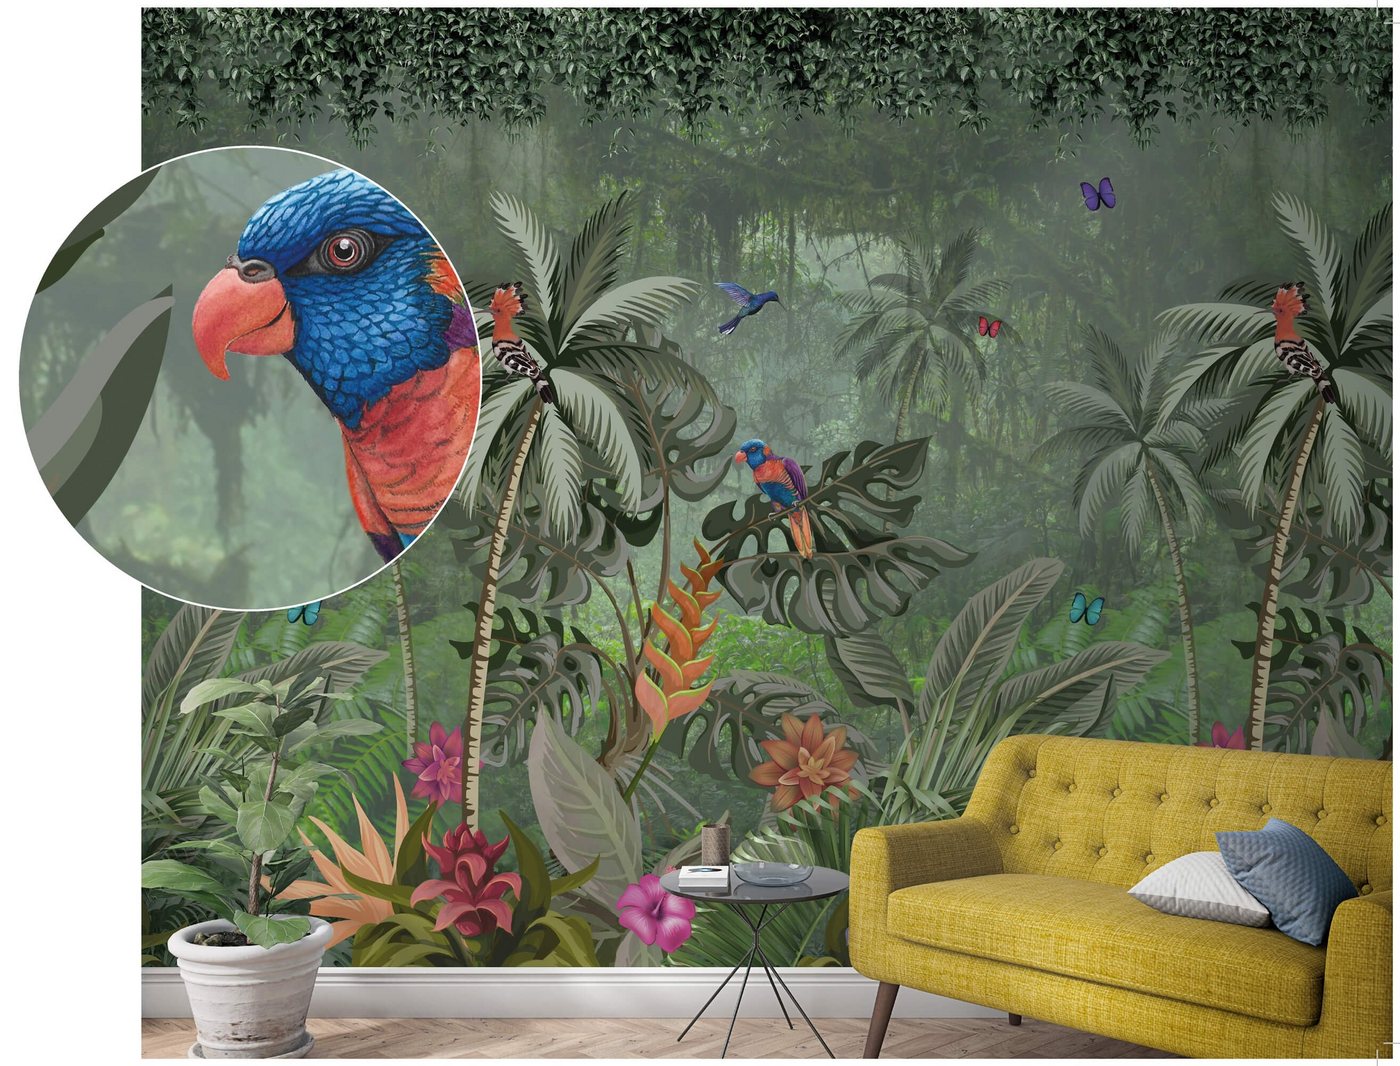 Newroom Vliestapete, [ 2,7 x 2,12m ] großzügiges Motiv - kein wiederkehrendes Muster - nahtlos große Flächen möglich - Fototapete Wandbild Tiere Papagei Dschungel Made in Germany von Newroom